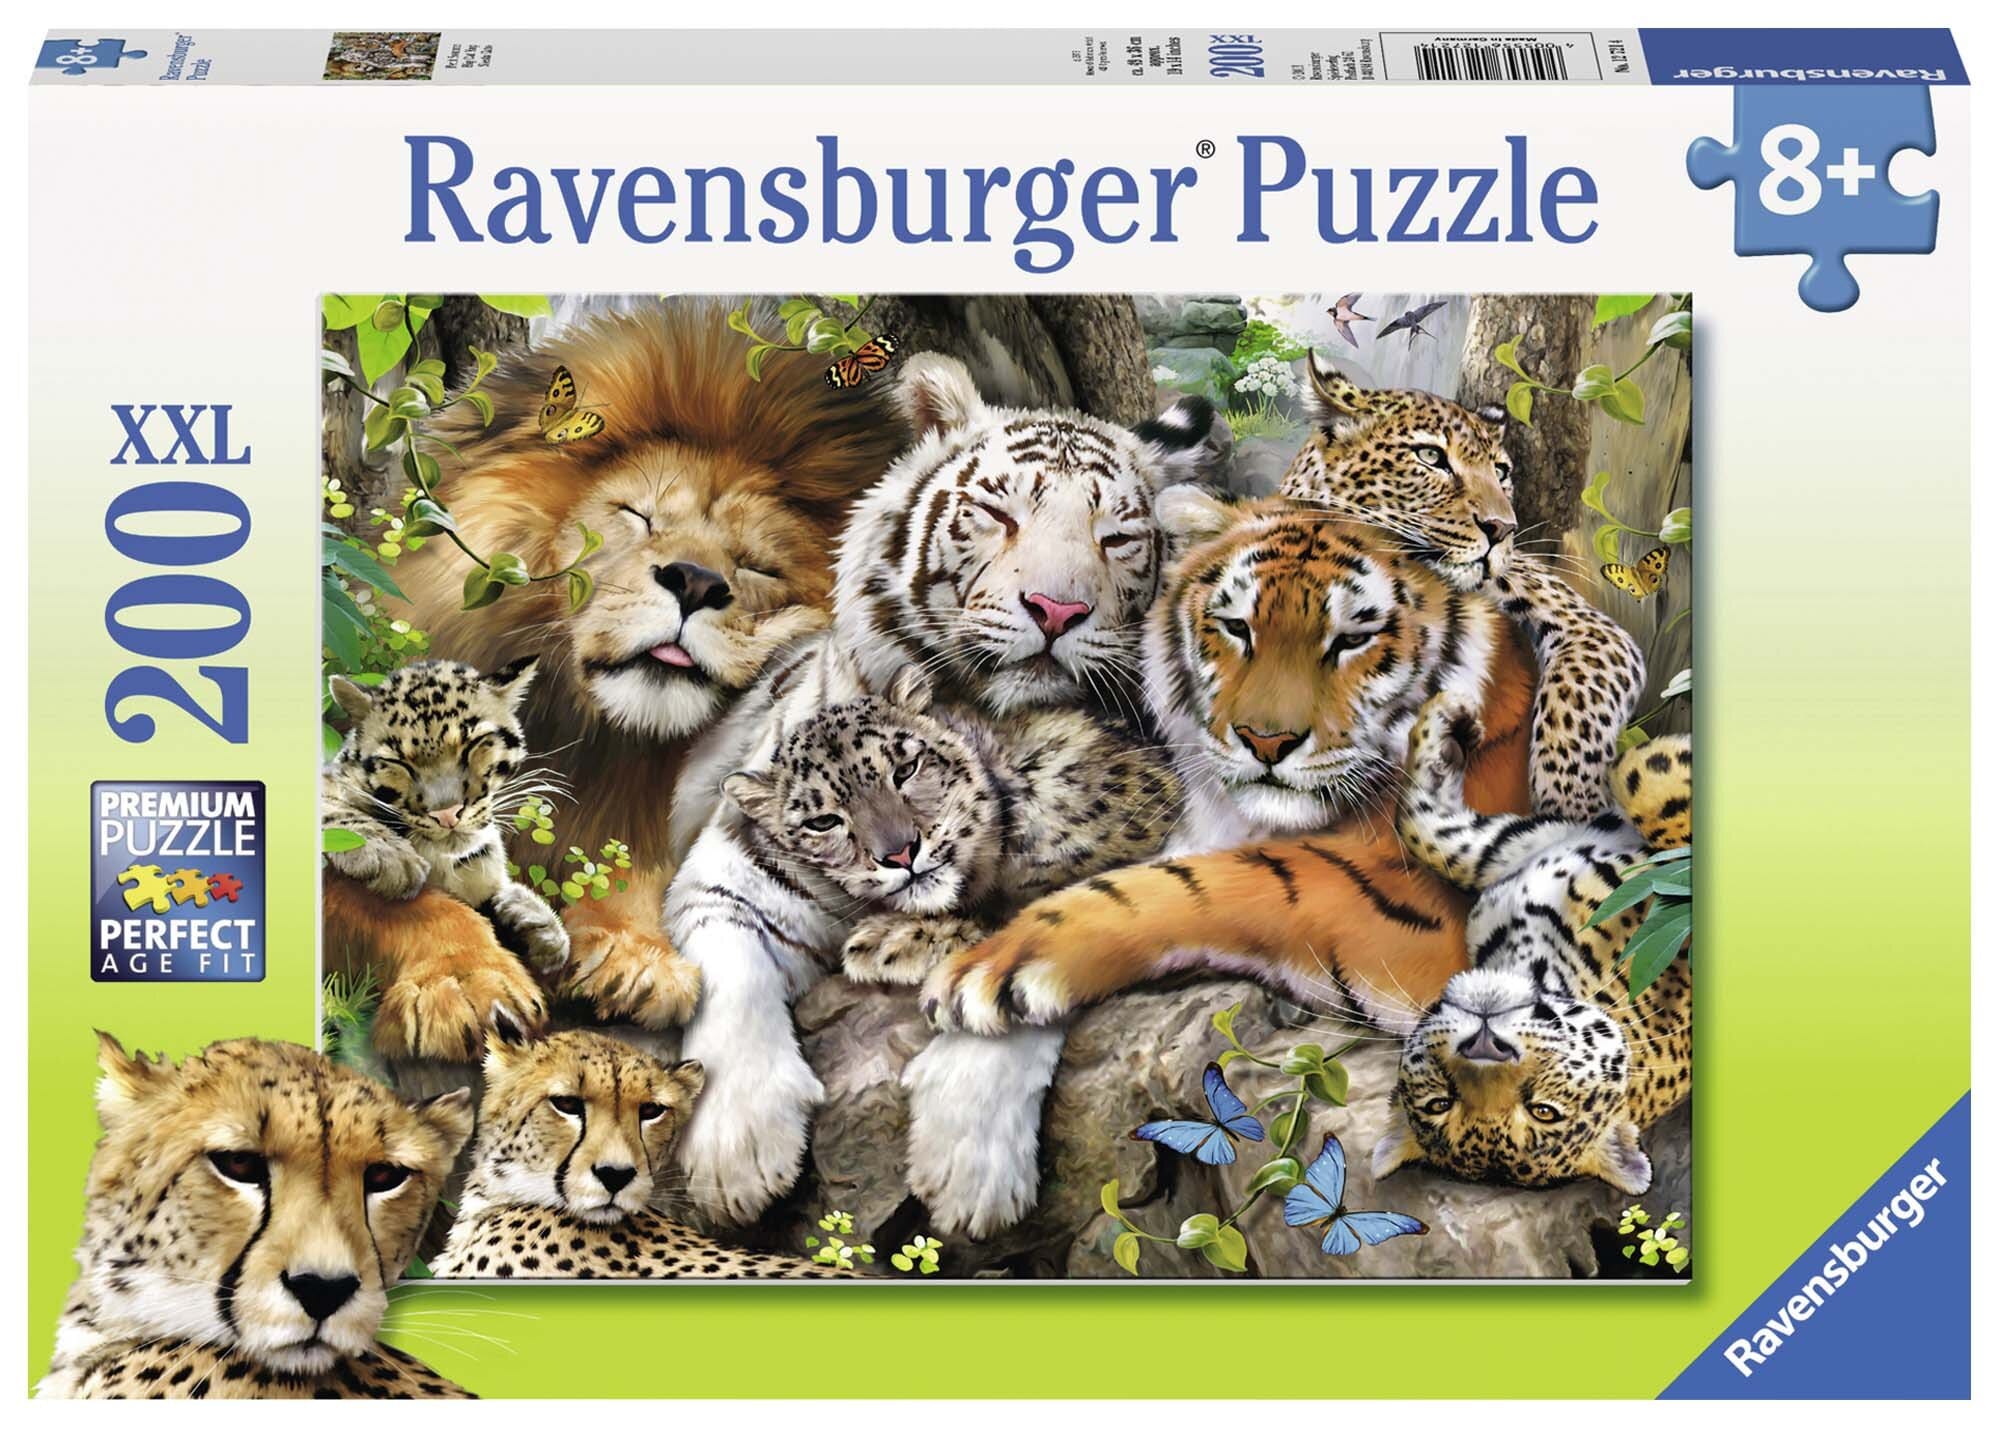 Ravensburger Puzzle - Schmusende Raubkatzen 200 Teile XXL